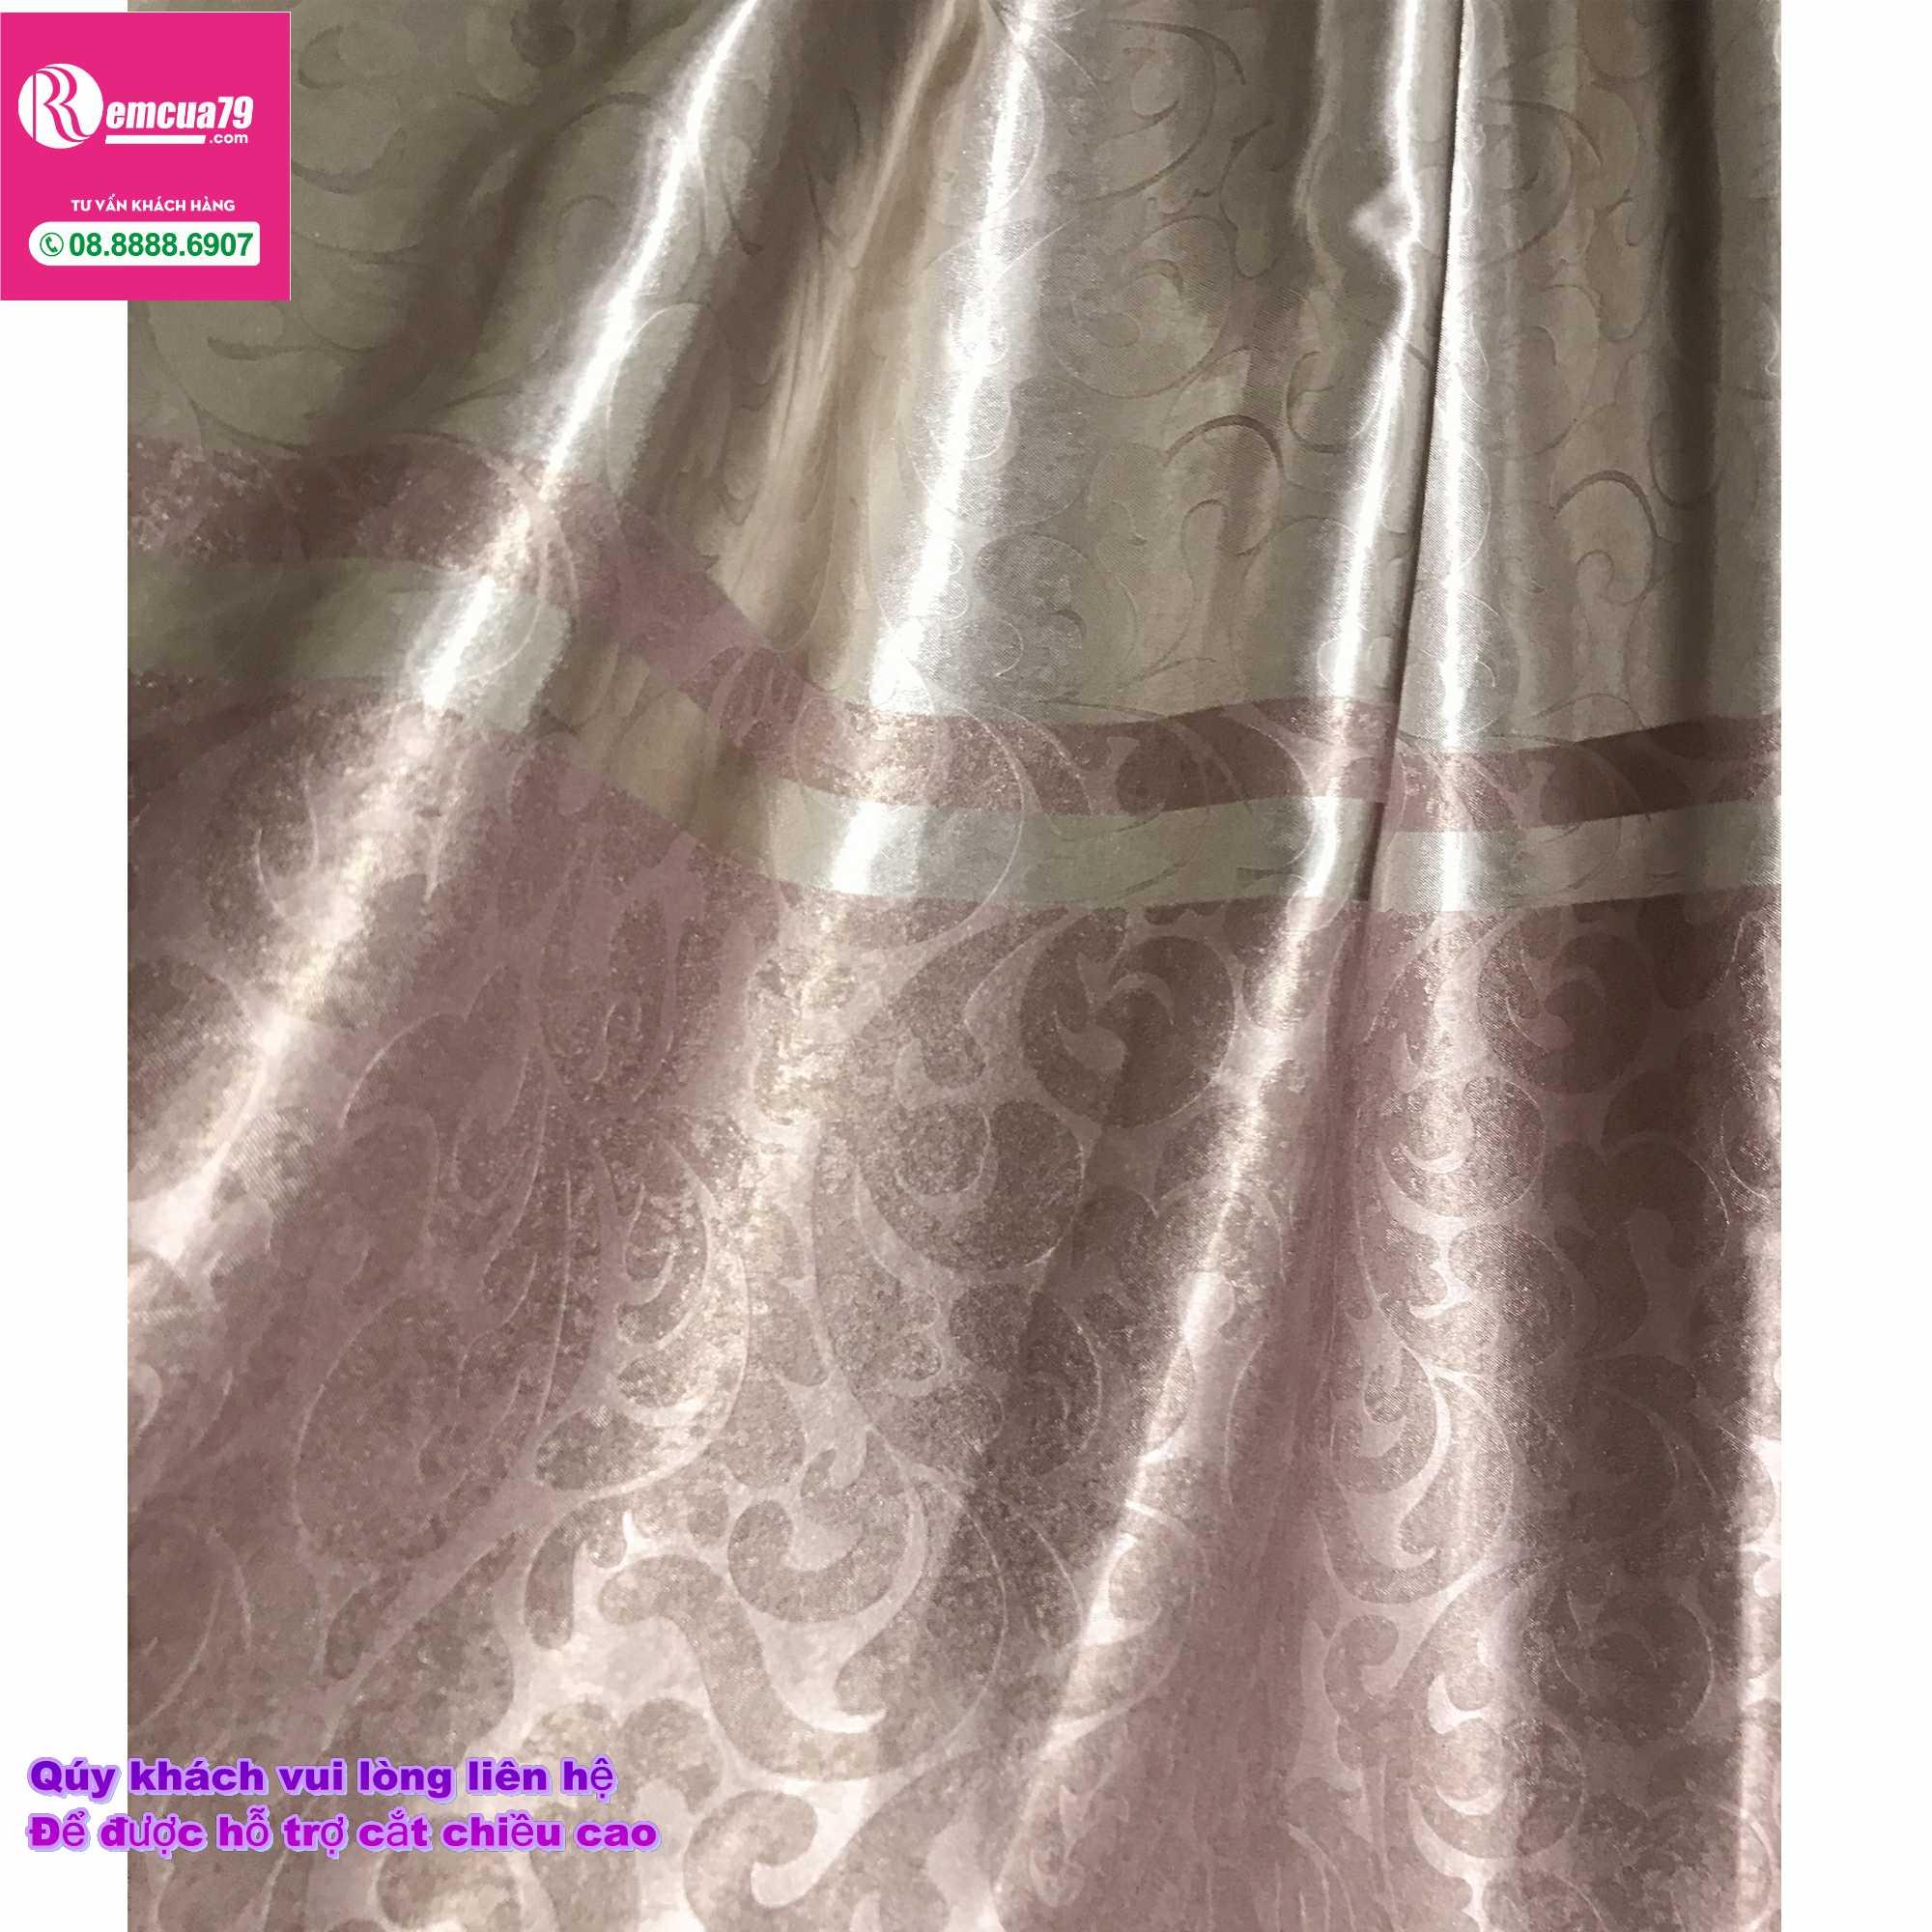 Rèm, màn cửa Ph curtains( ngang250cm x cao 130cm) màu Xám nâu hoa văn chìm hiện đại + tặng dây vén màn